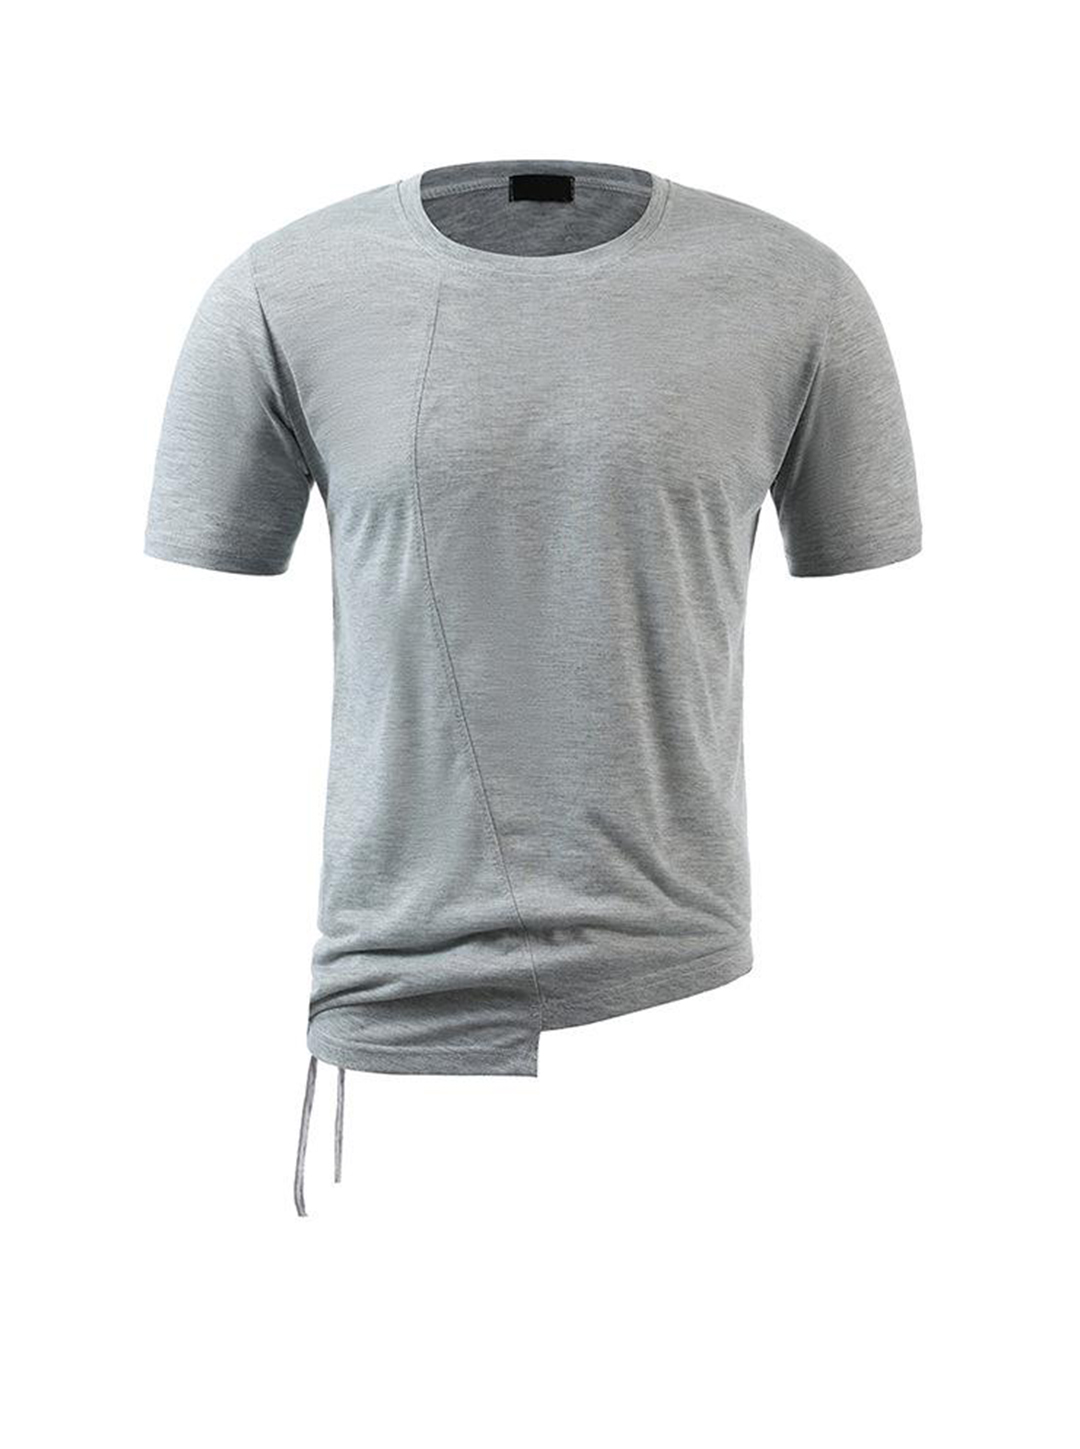 Men's Leonard Cut Design Irregular Hem Short-sleeved T-shirt-poisonstreetwear.com